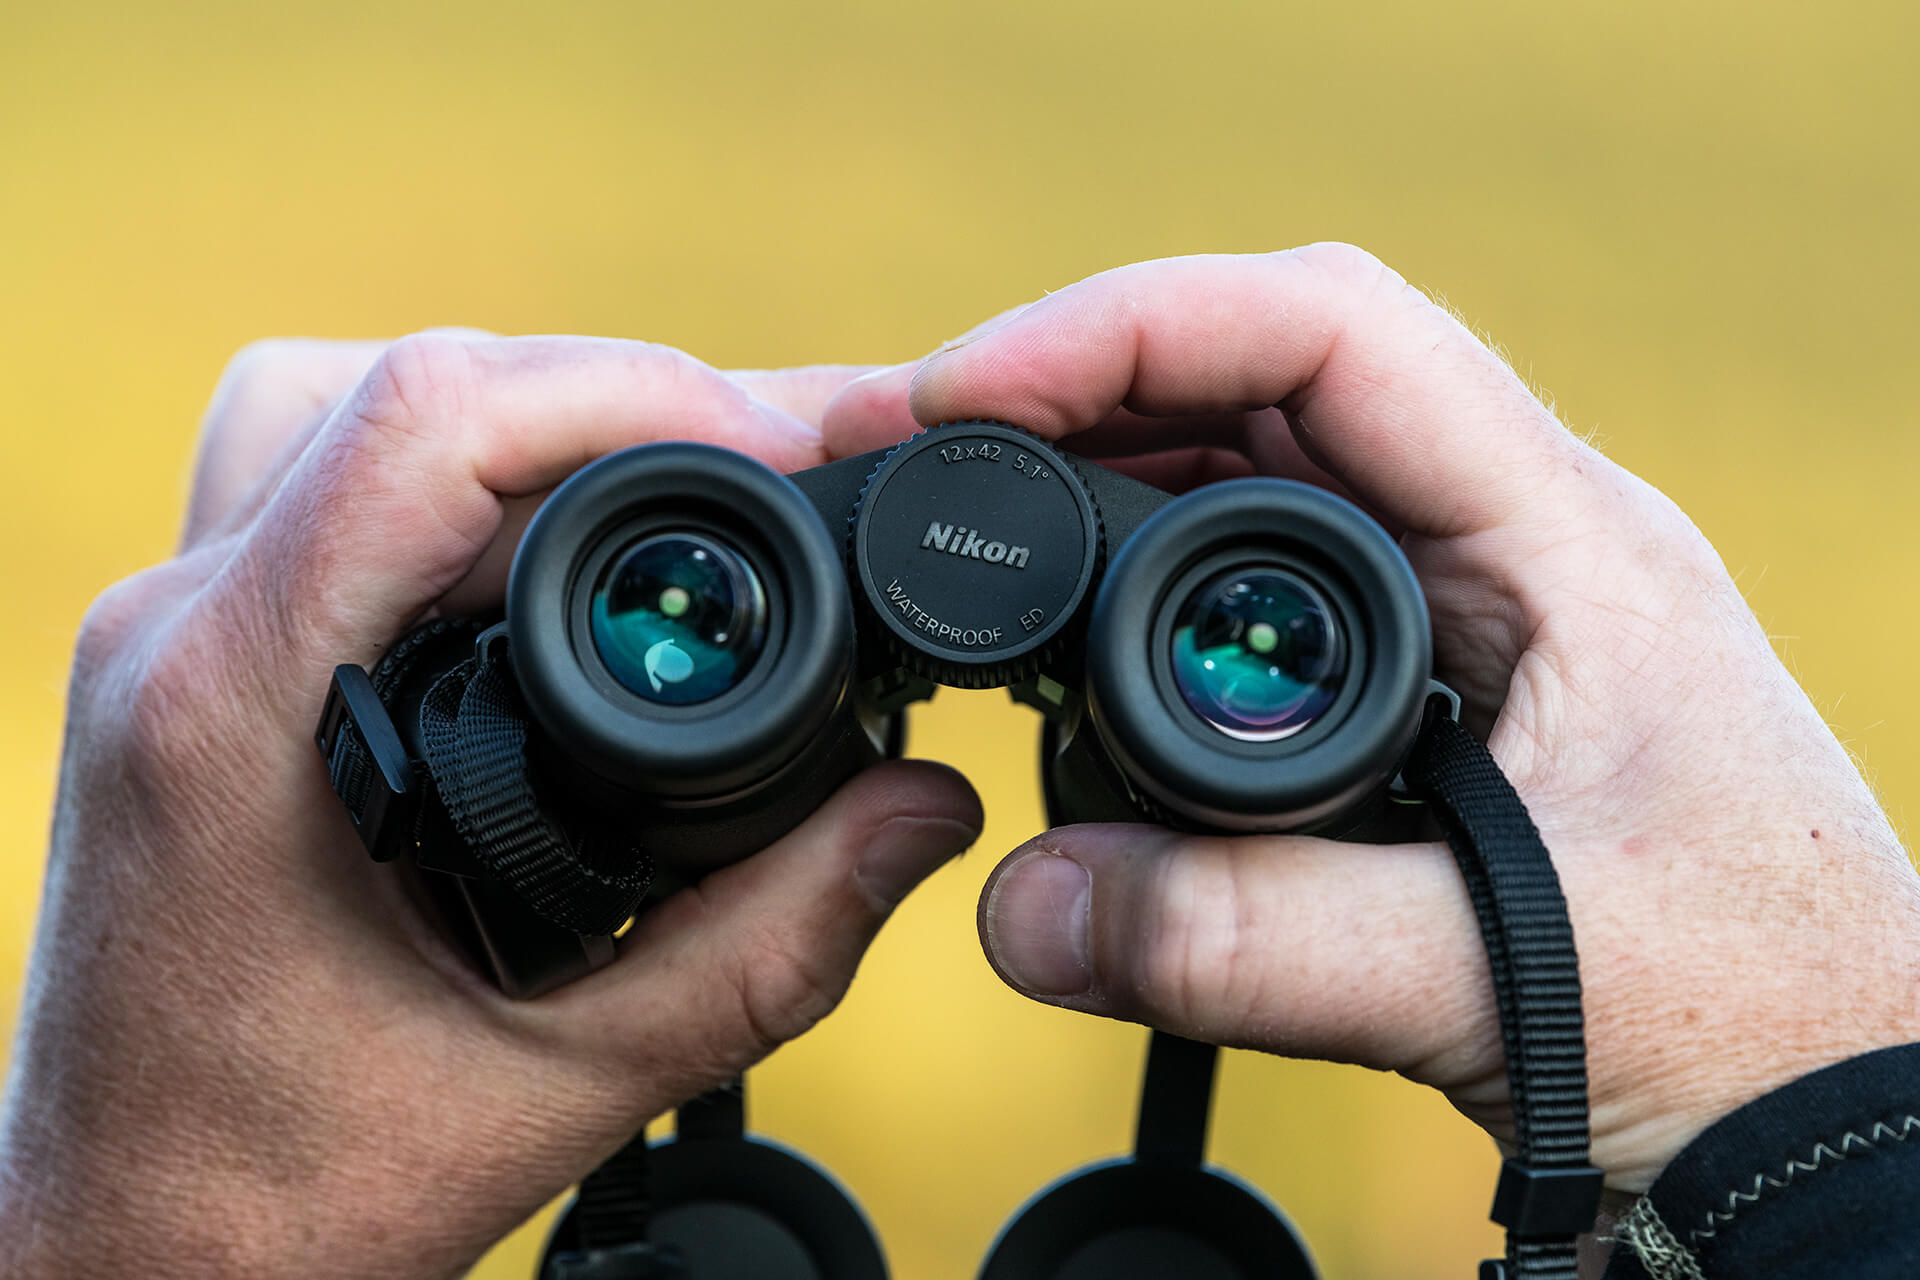 Ďalekohľad Nikon Monarch M5 má otočné a posuvné gumové očnice, ktoré ponúkajú vysoký komfort a umožňujú ľahké umiestnenie očí do ideálnej pozorovacej pozície.